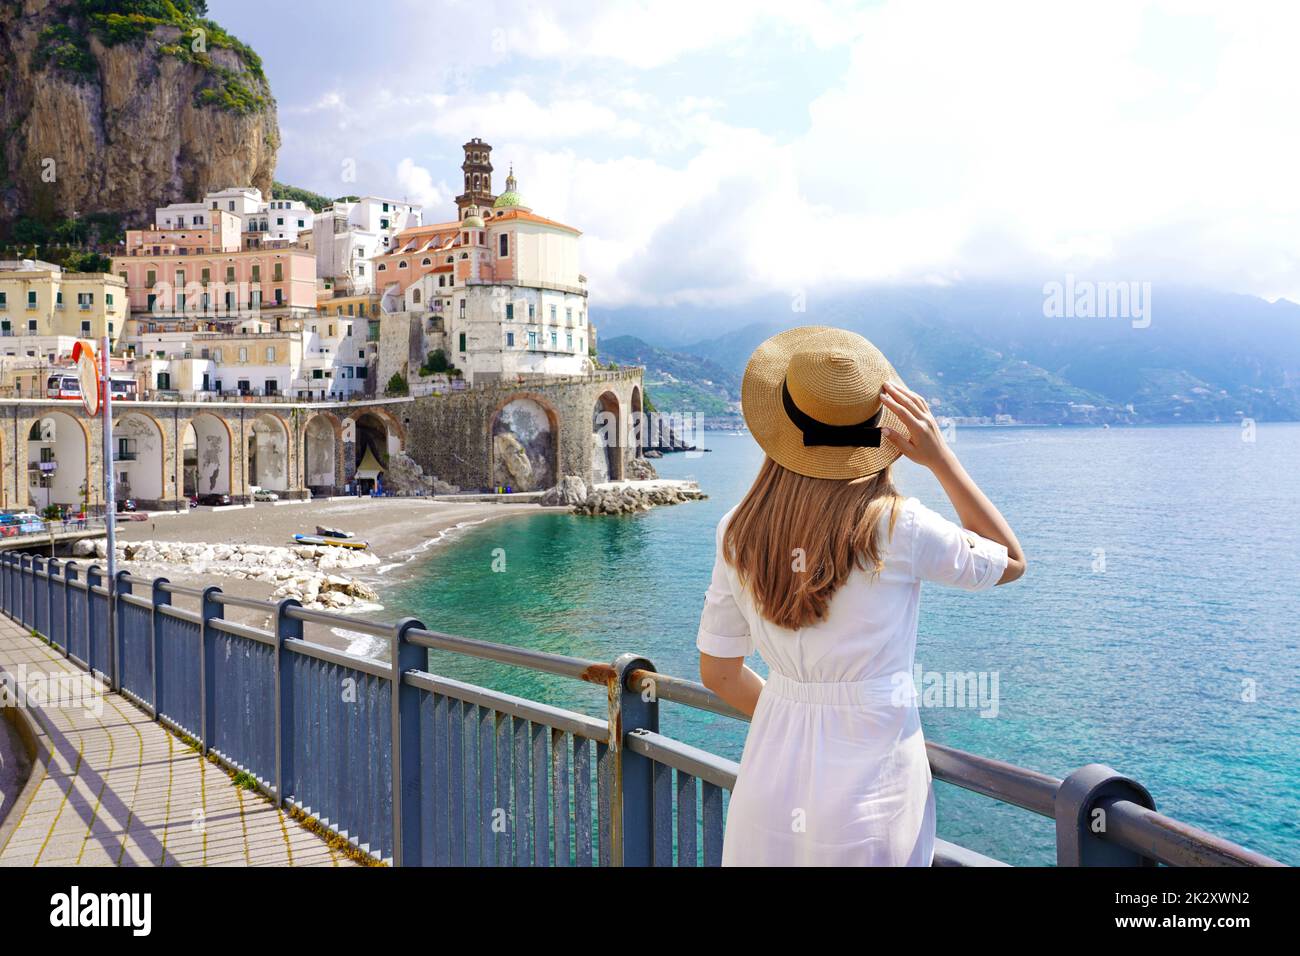 Tourismus an der Amalfiküste. Rückansicht der schönen Mode Mädchen genießen Blick auf Atrani Dorf an der Amalfiküste, Italien. Urlaub Europe im Sommer. Stockfoto